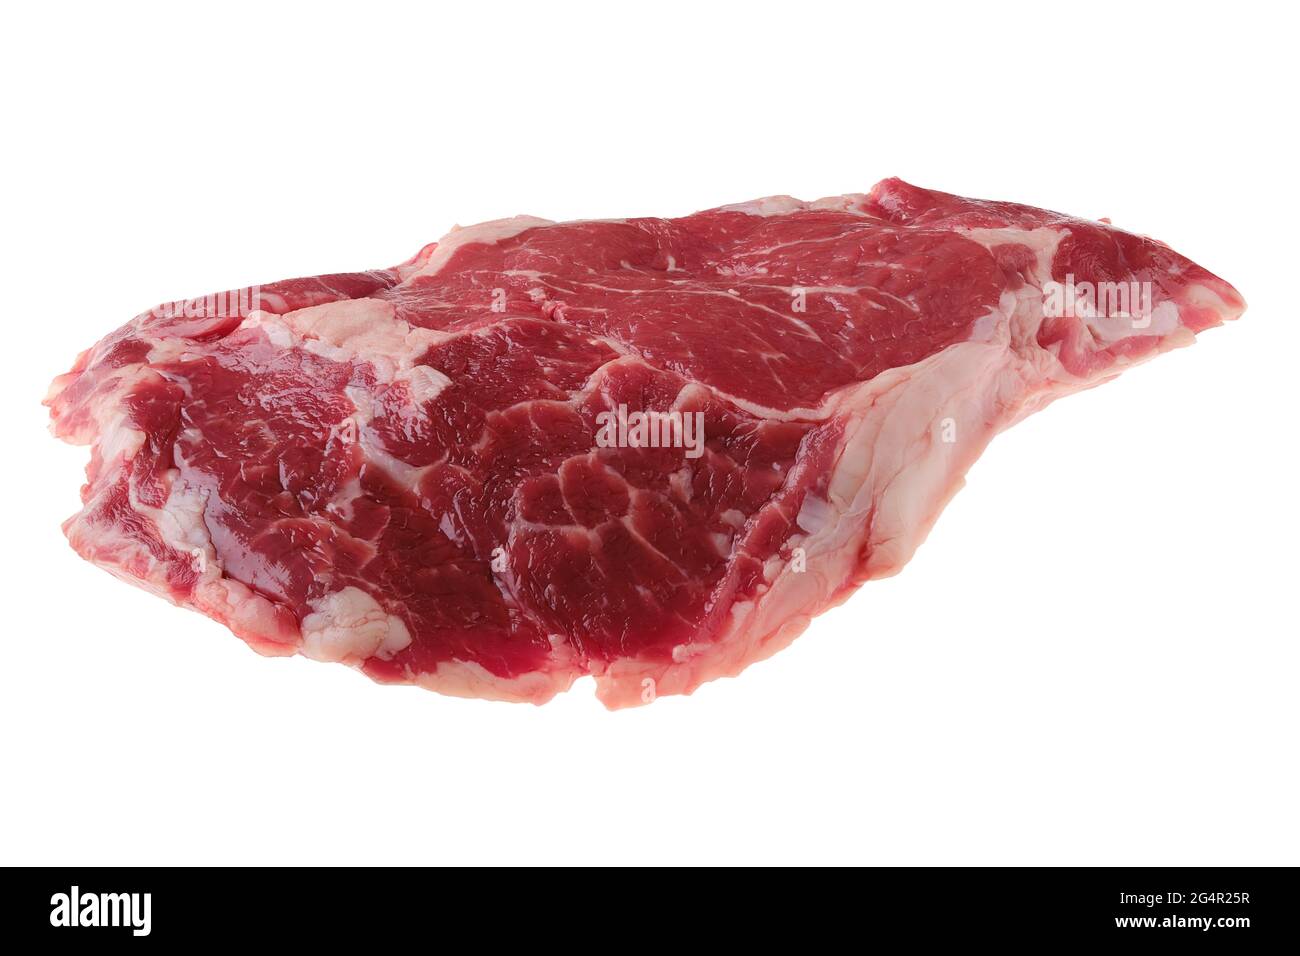 Steak de ribeye cru, viande désossée de bœuf de qualité supérieure isolée sur fond blanc Banque D'Images